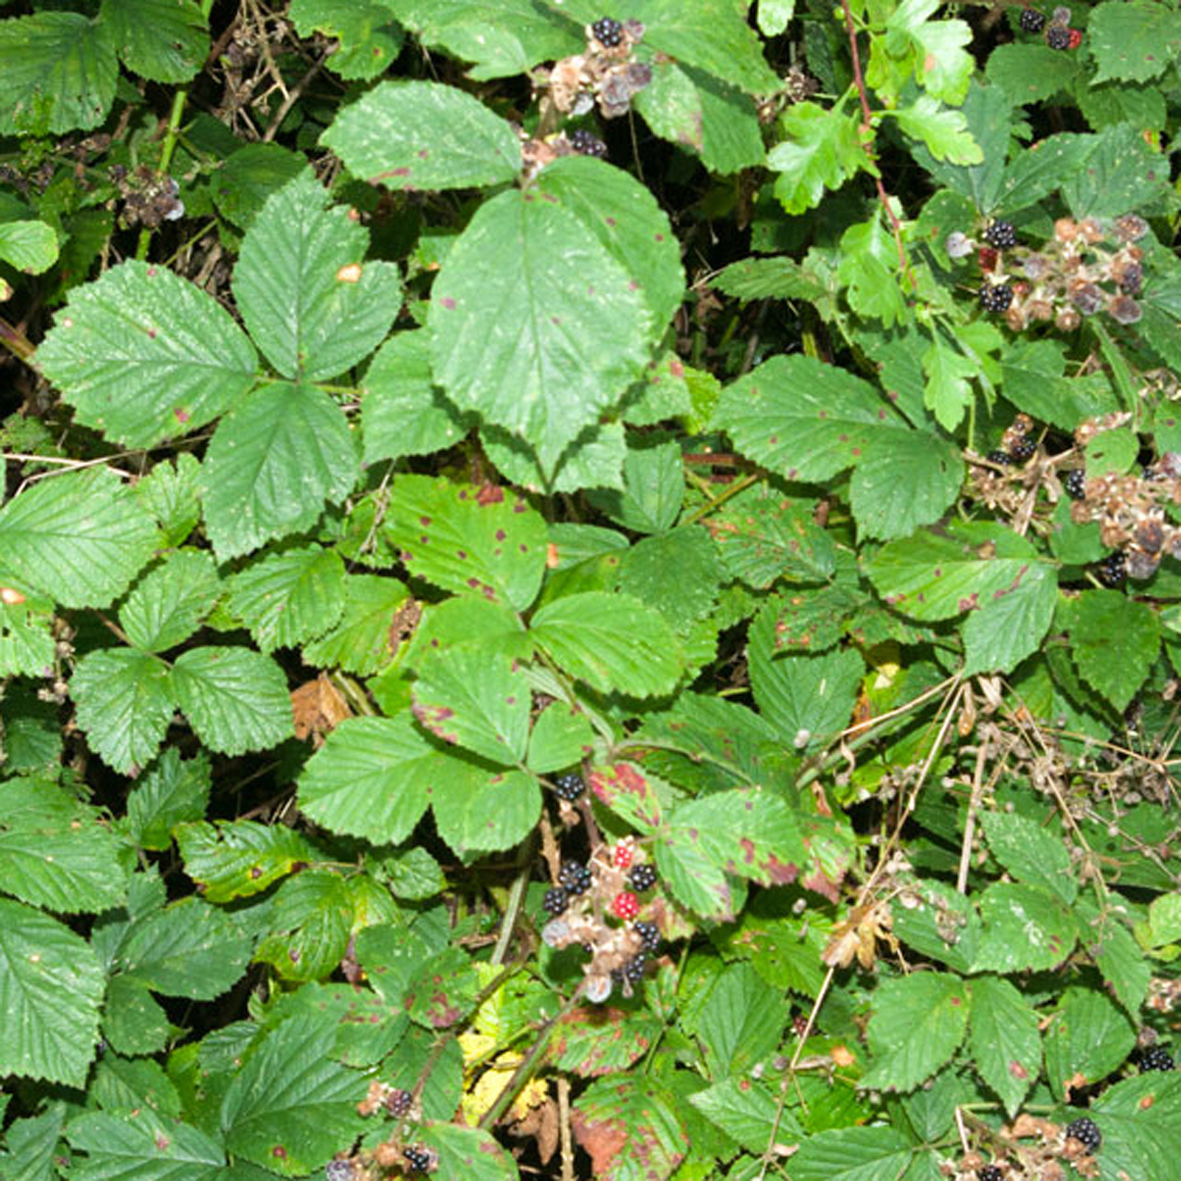 Blackberry leaves